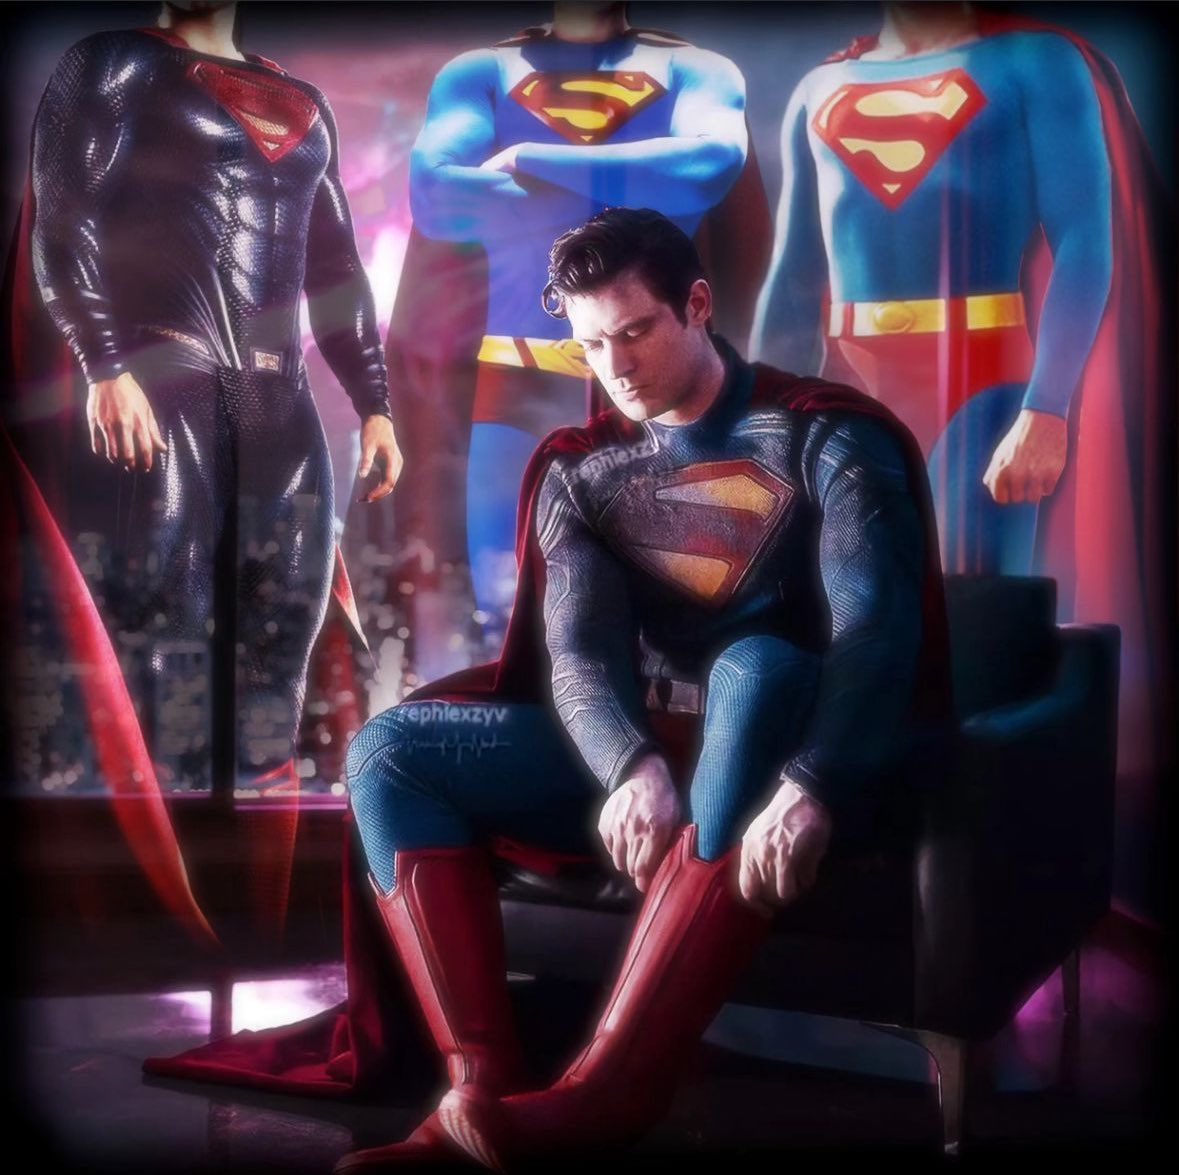 Beaucoup ce sont demandés pourquoi cette photo pour présenter le nouveau costume de Superman. Justement j’aime la symbolique d’être à la hauteur et la responsabilité de chausser les bottes après Reeve, Routh et Cavill au cinéma. #Superman #DavidCorenswet #Superman2025